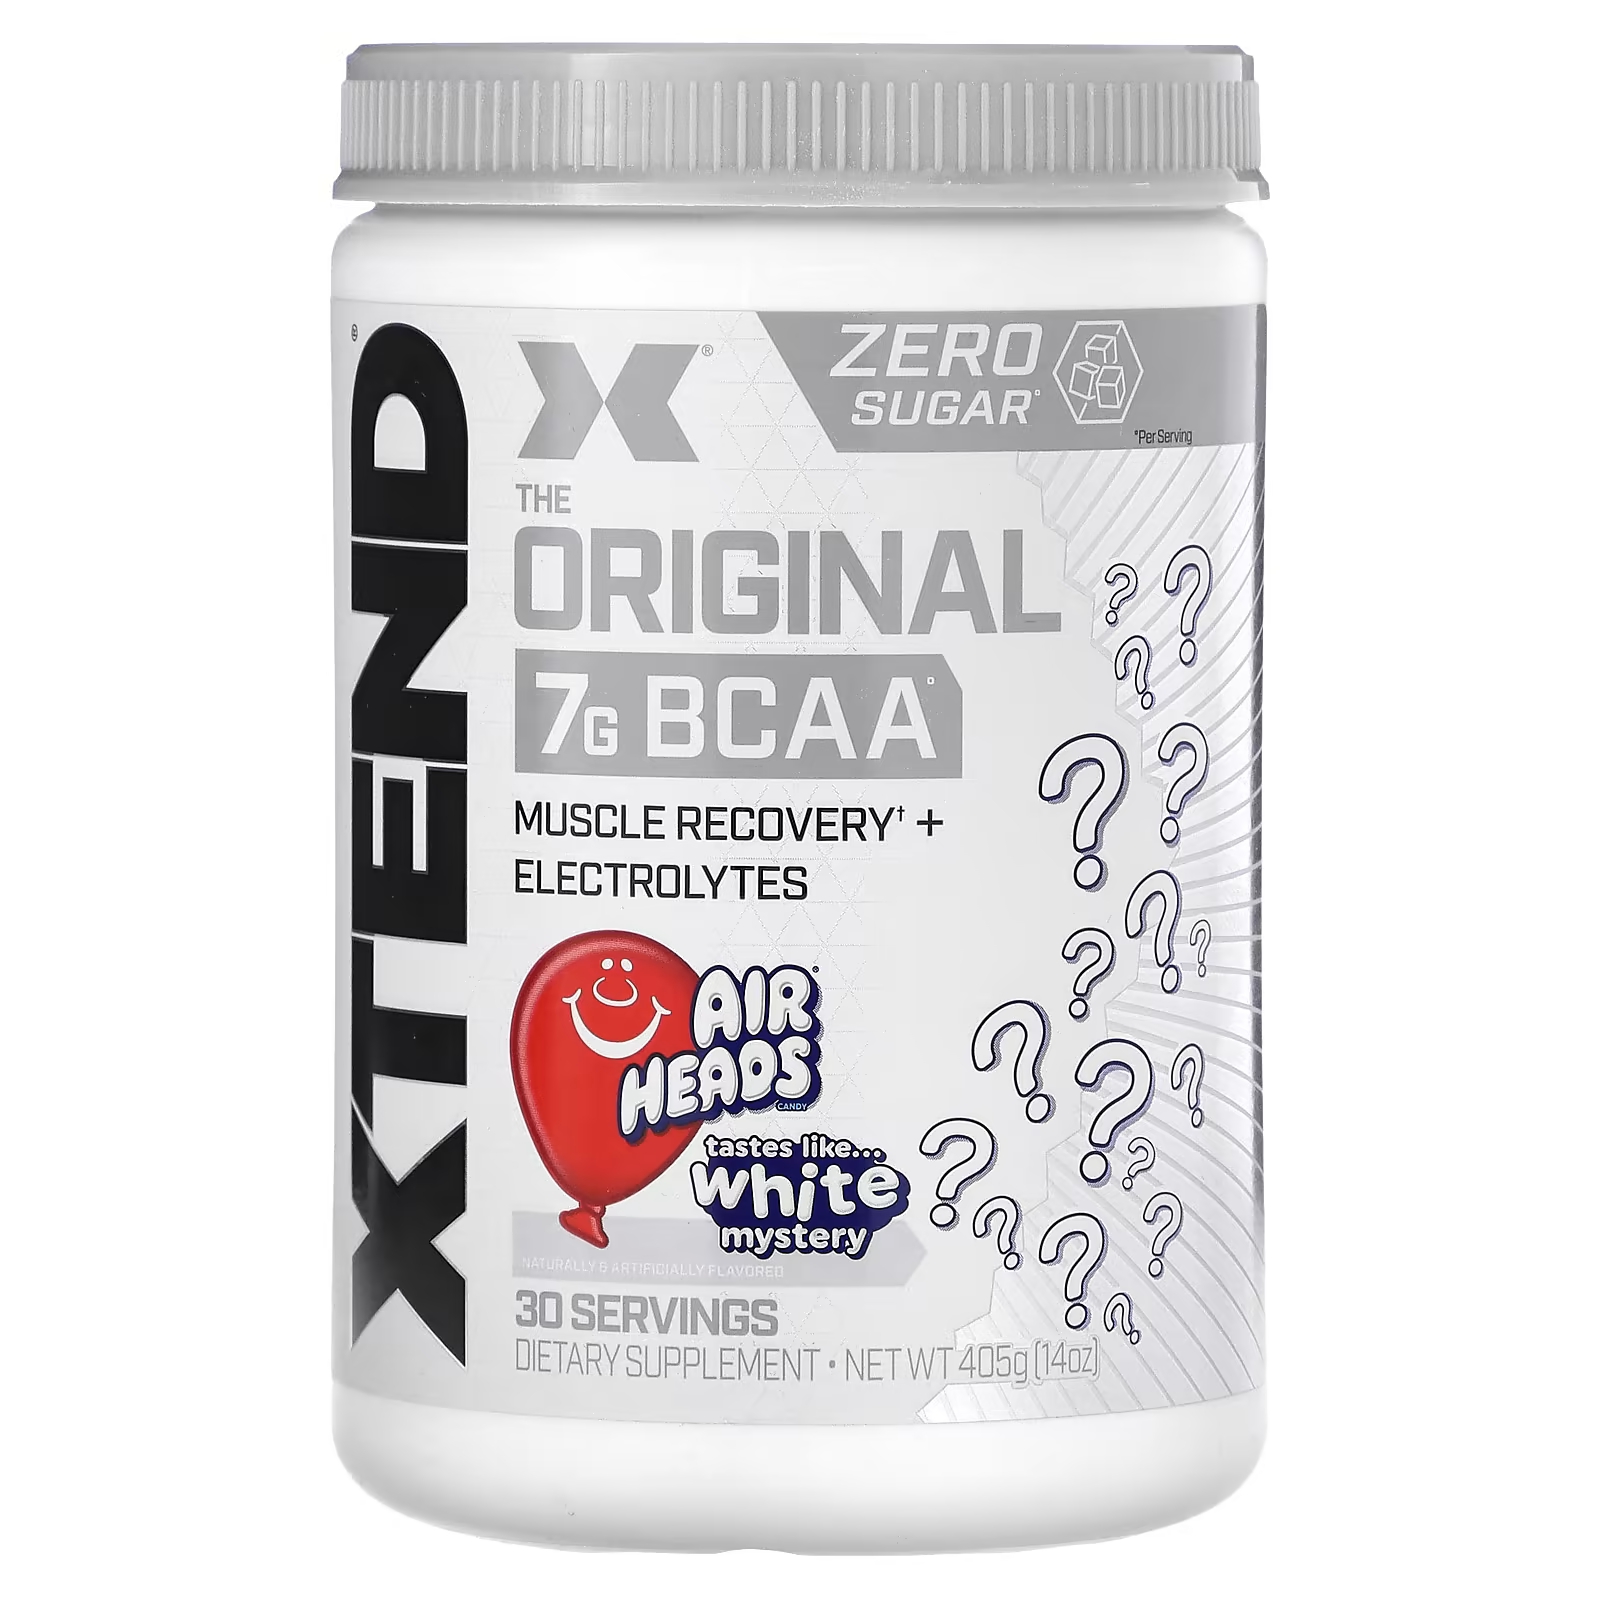 Пищевая добавка Xtend The Original 7G BCAA xtend the original 7 г аминокислот с разветвленной цепью bcaa со вкусом яблока 1 26 кг 2 78 фунта